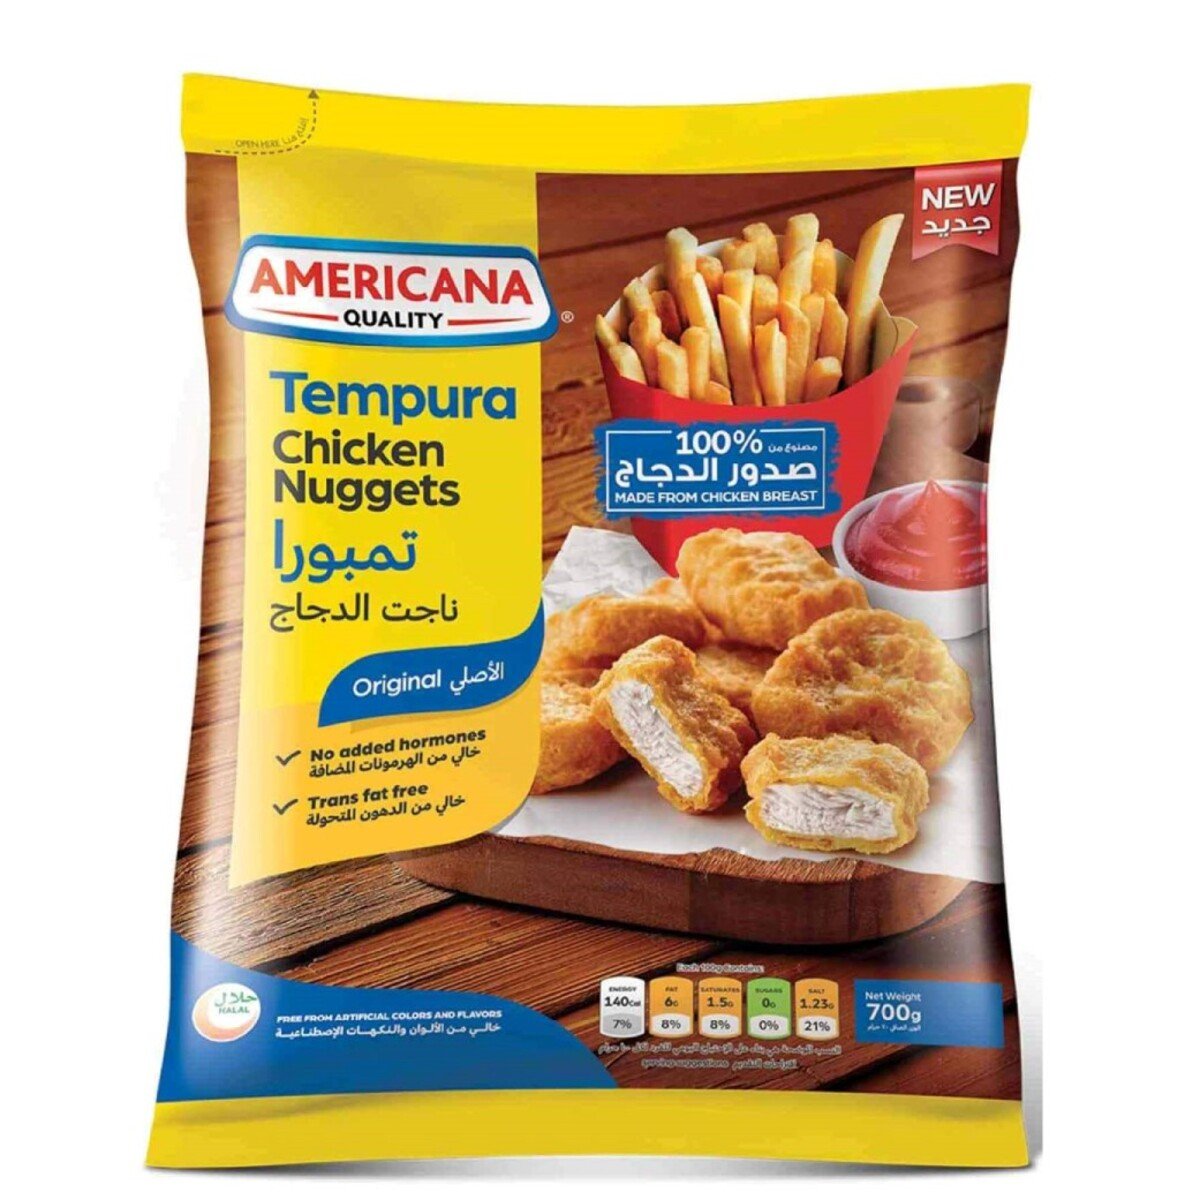 Buy Americana Tempura Chicken Nuggets 700 g Online at Best Price | 10-20 PROMOTION GROCERY | Lulu UAE in UAE